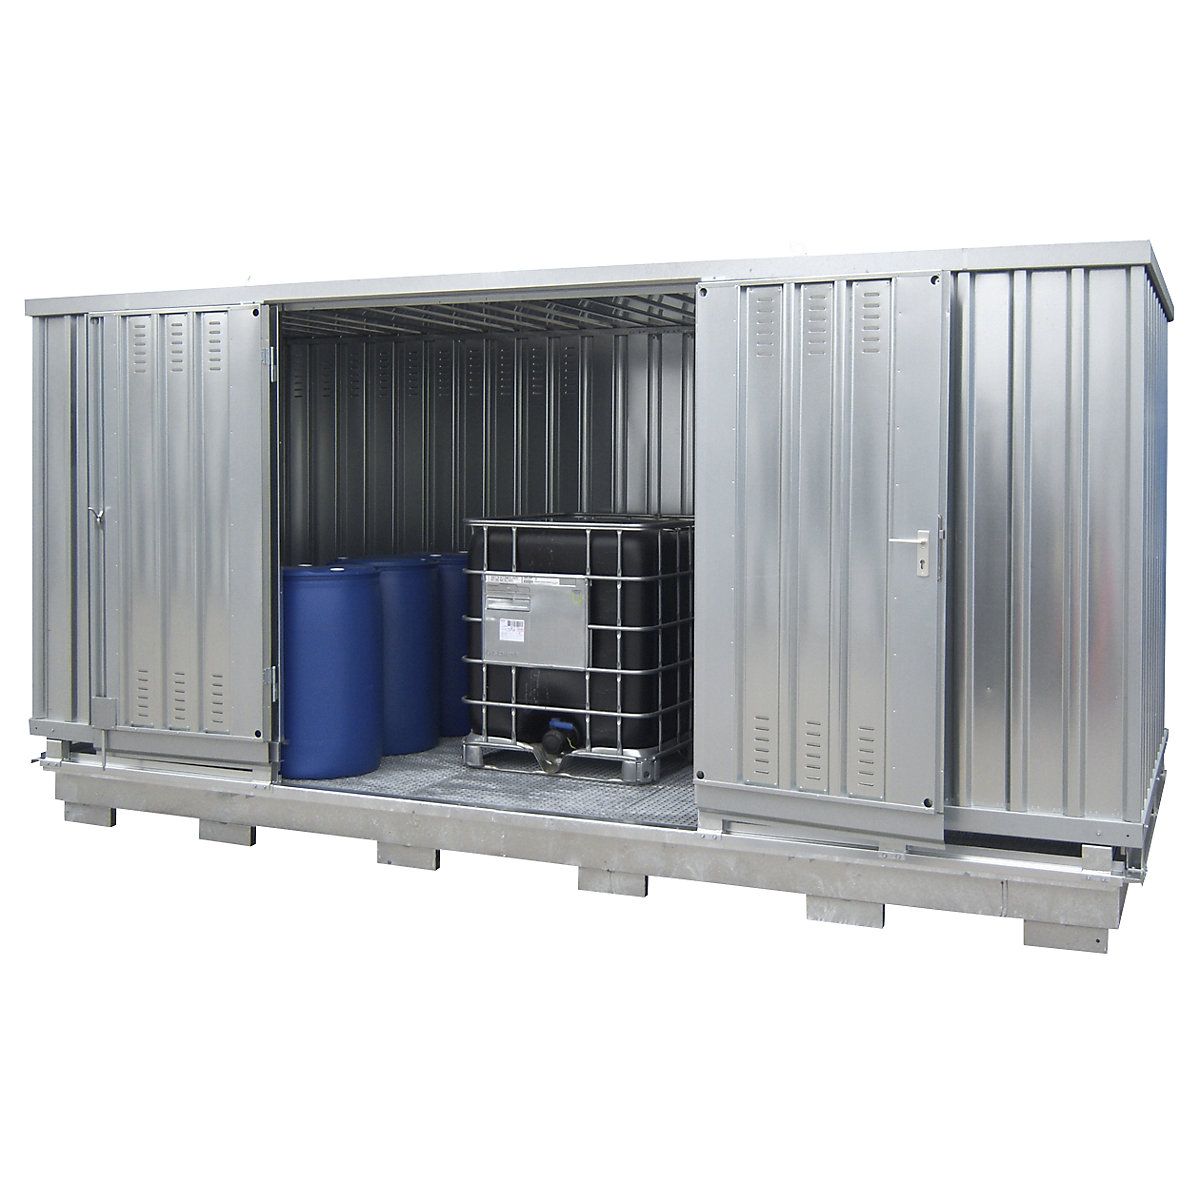 Gefahrstoff-Container zur passiven Lagerung entzündbarer Stoffe, Außen-HxBxT 2570 x 5075 x 2075 mm, verzinkt